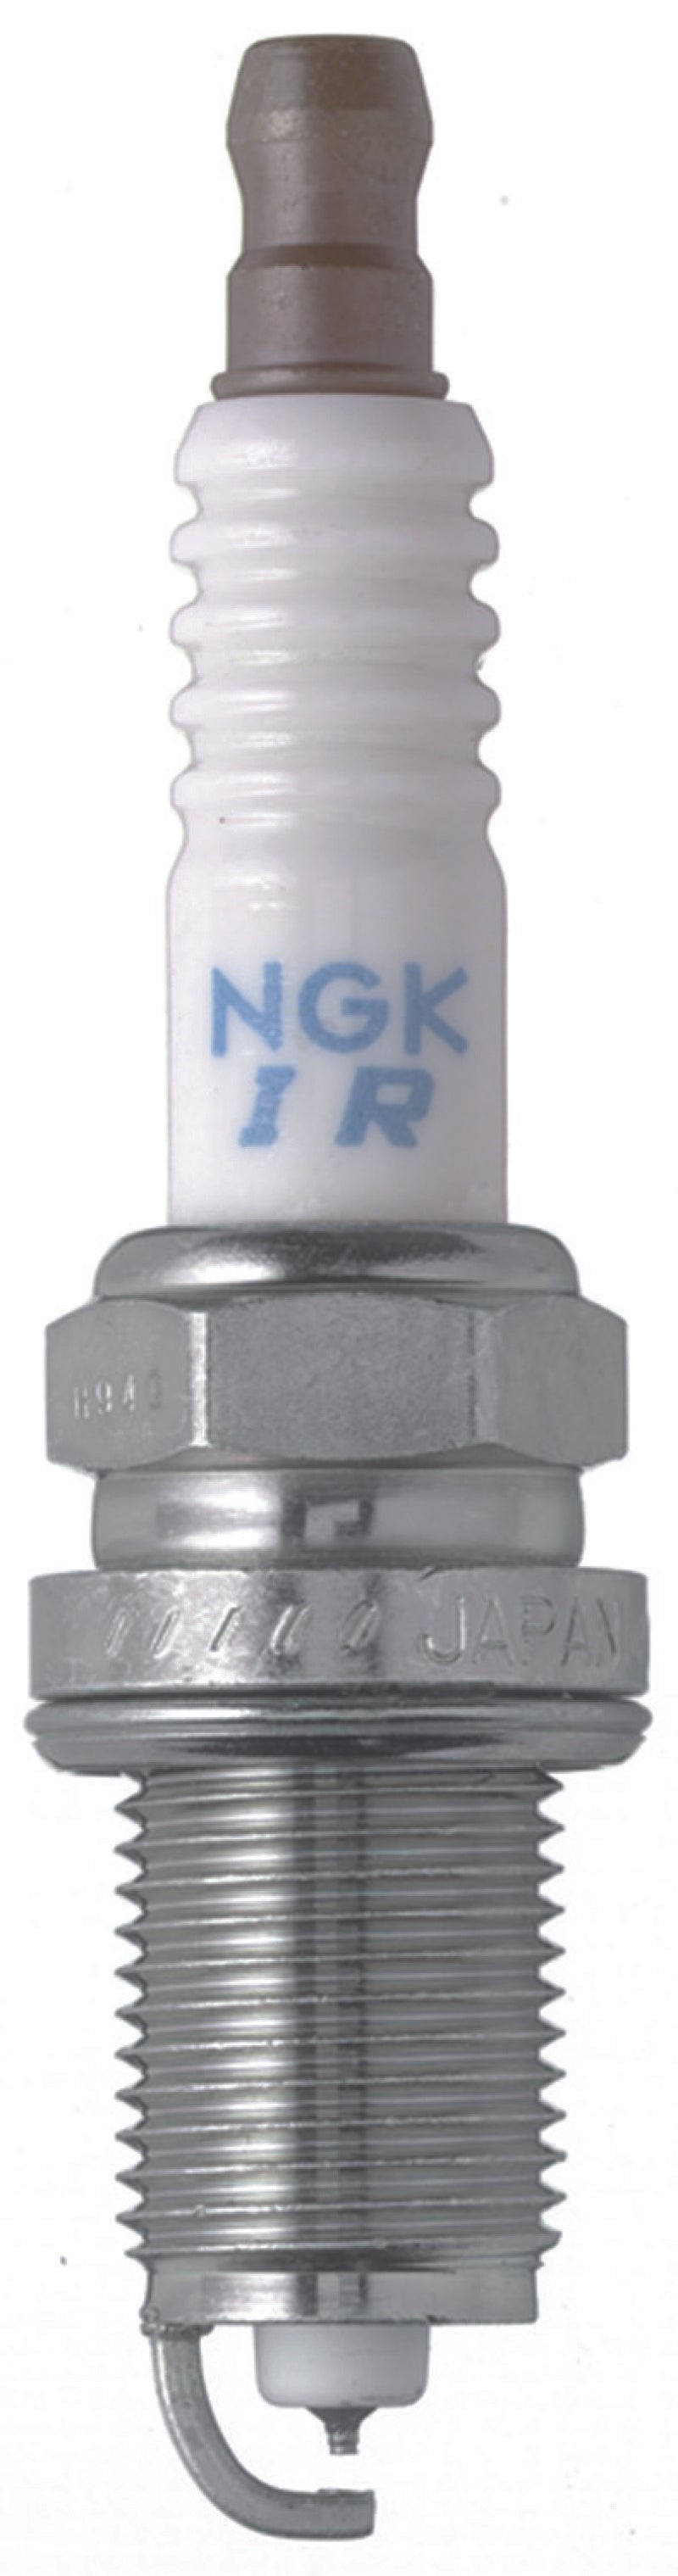 NGK Iridium IX Spark Plug Box of 4 (IFR9H-11) -  Shop now at Performance Car Parts